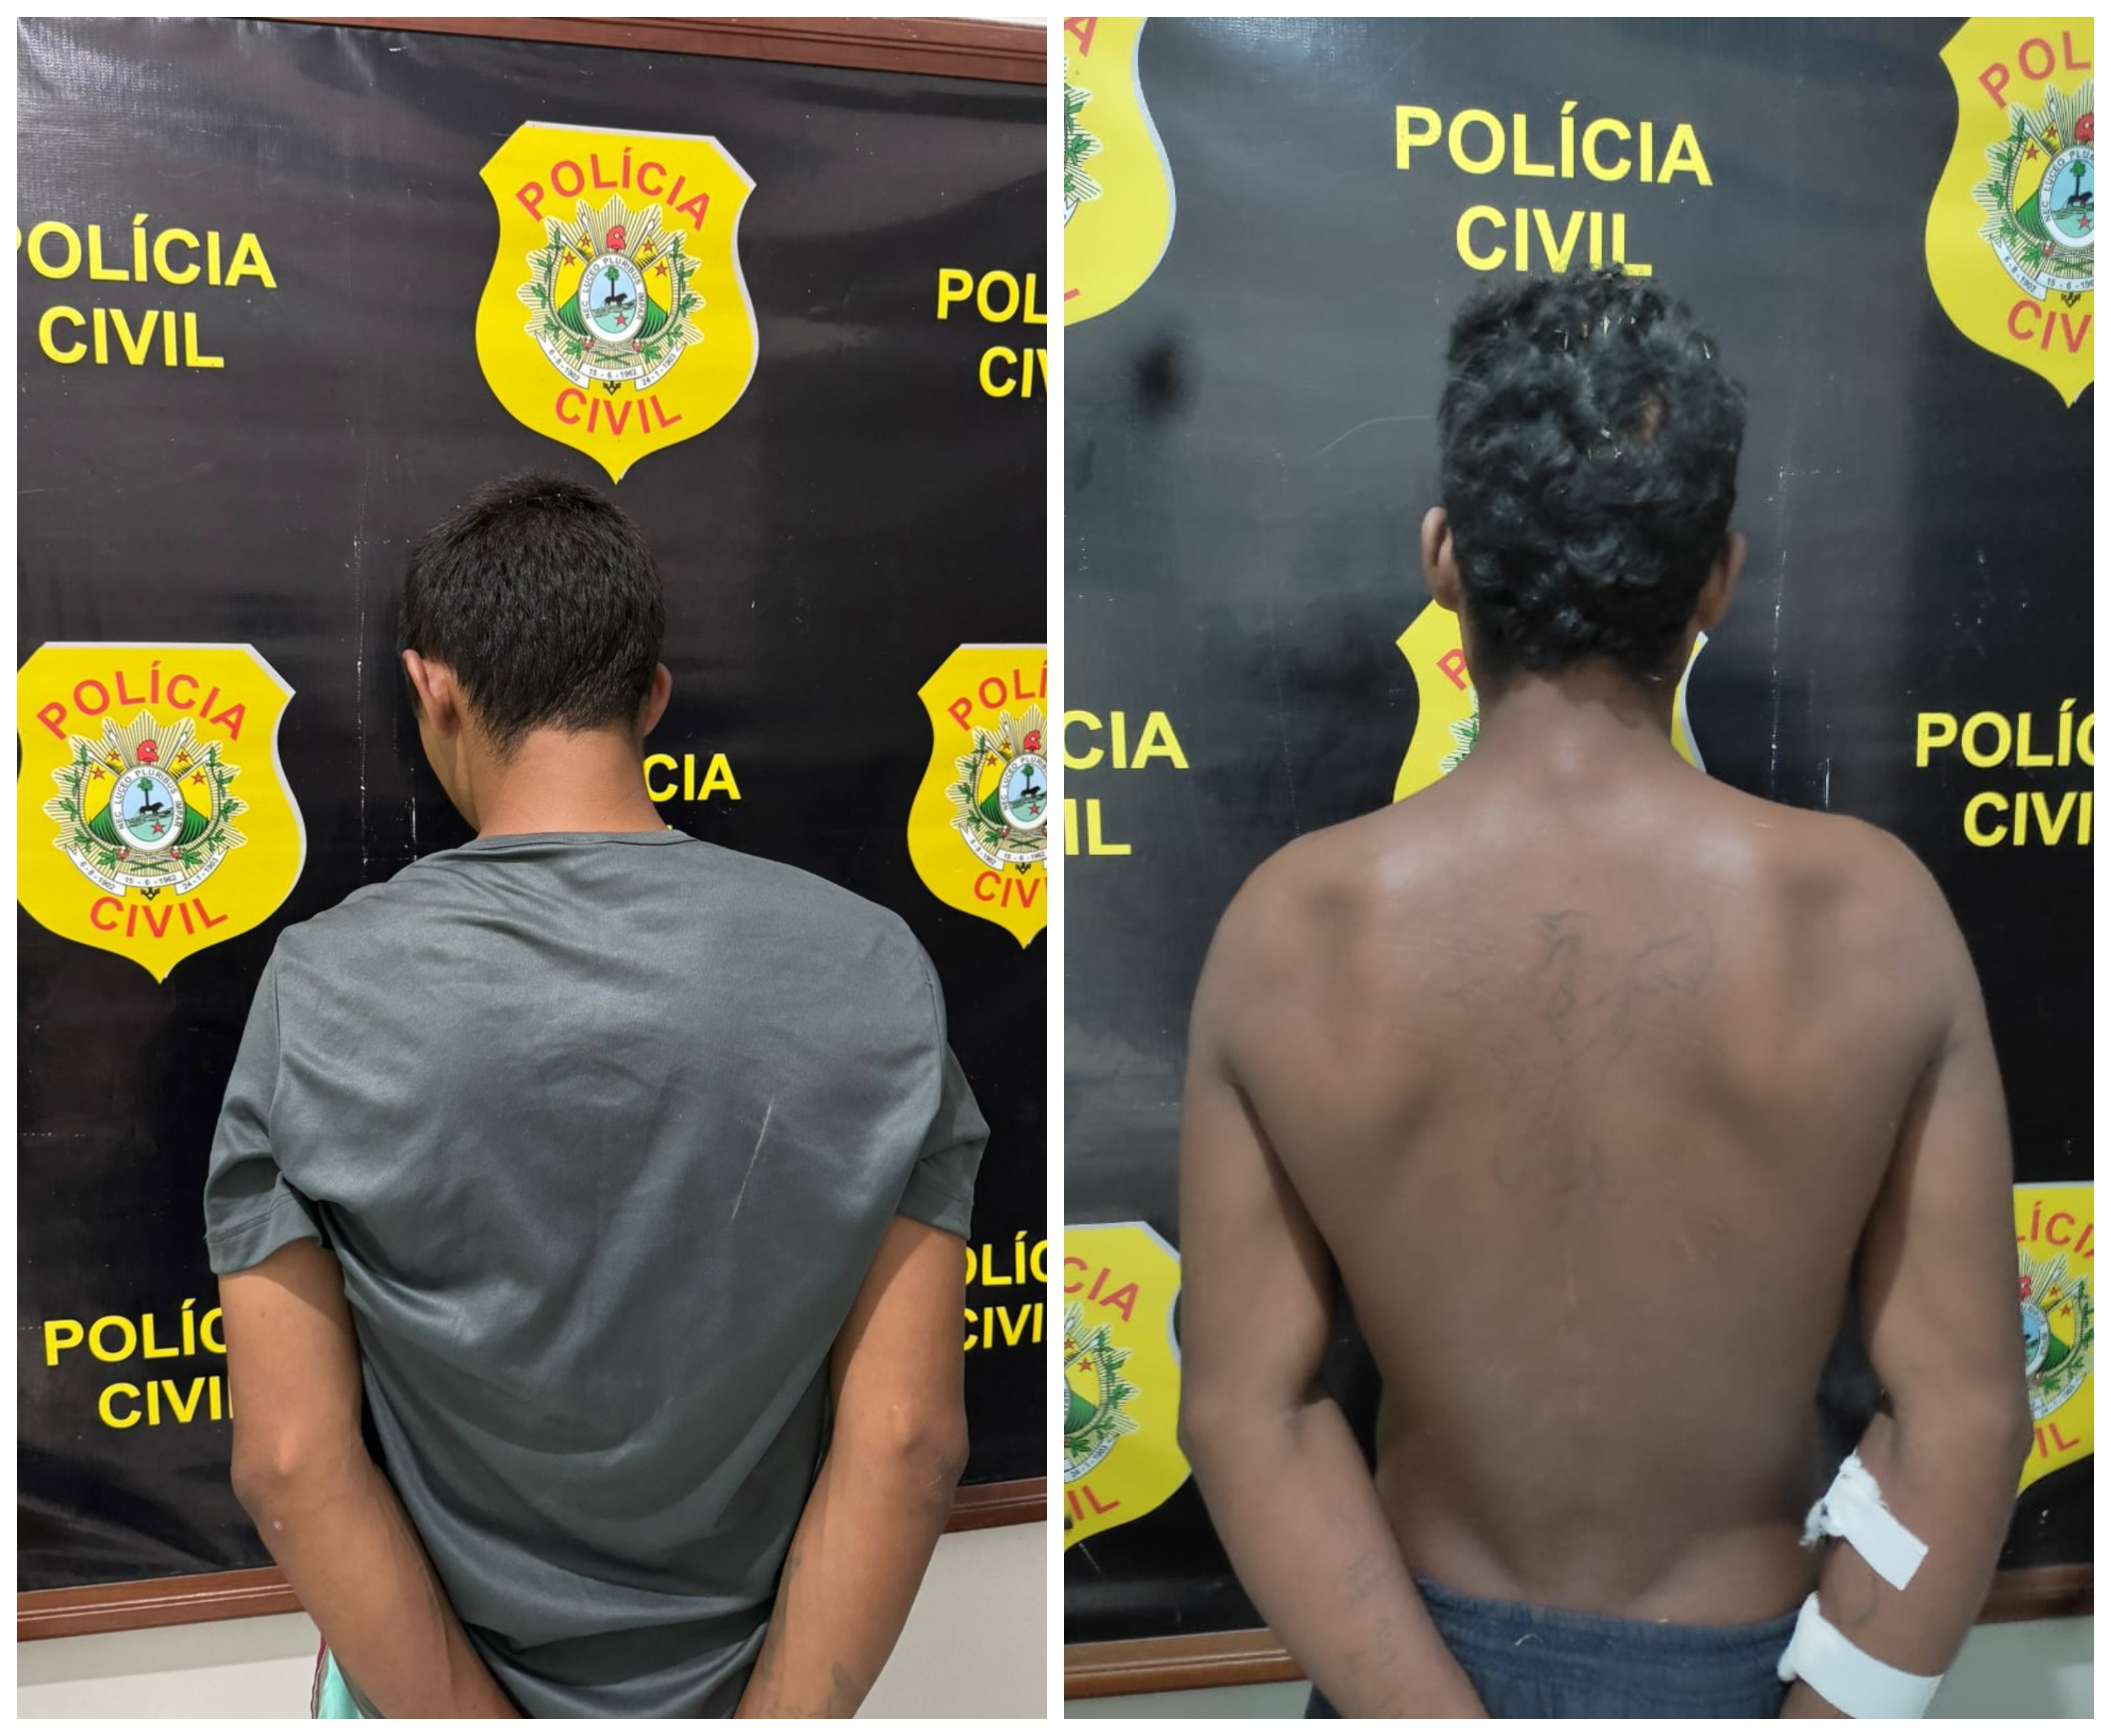 Dois são presos suspeitos de estuprar adolescente de 14 anos em matagal no Acre